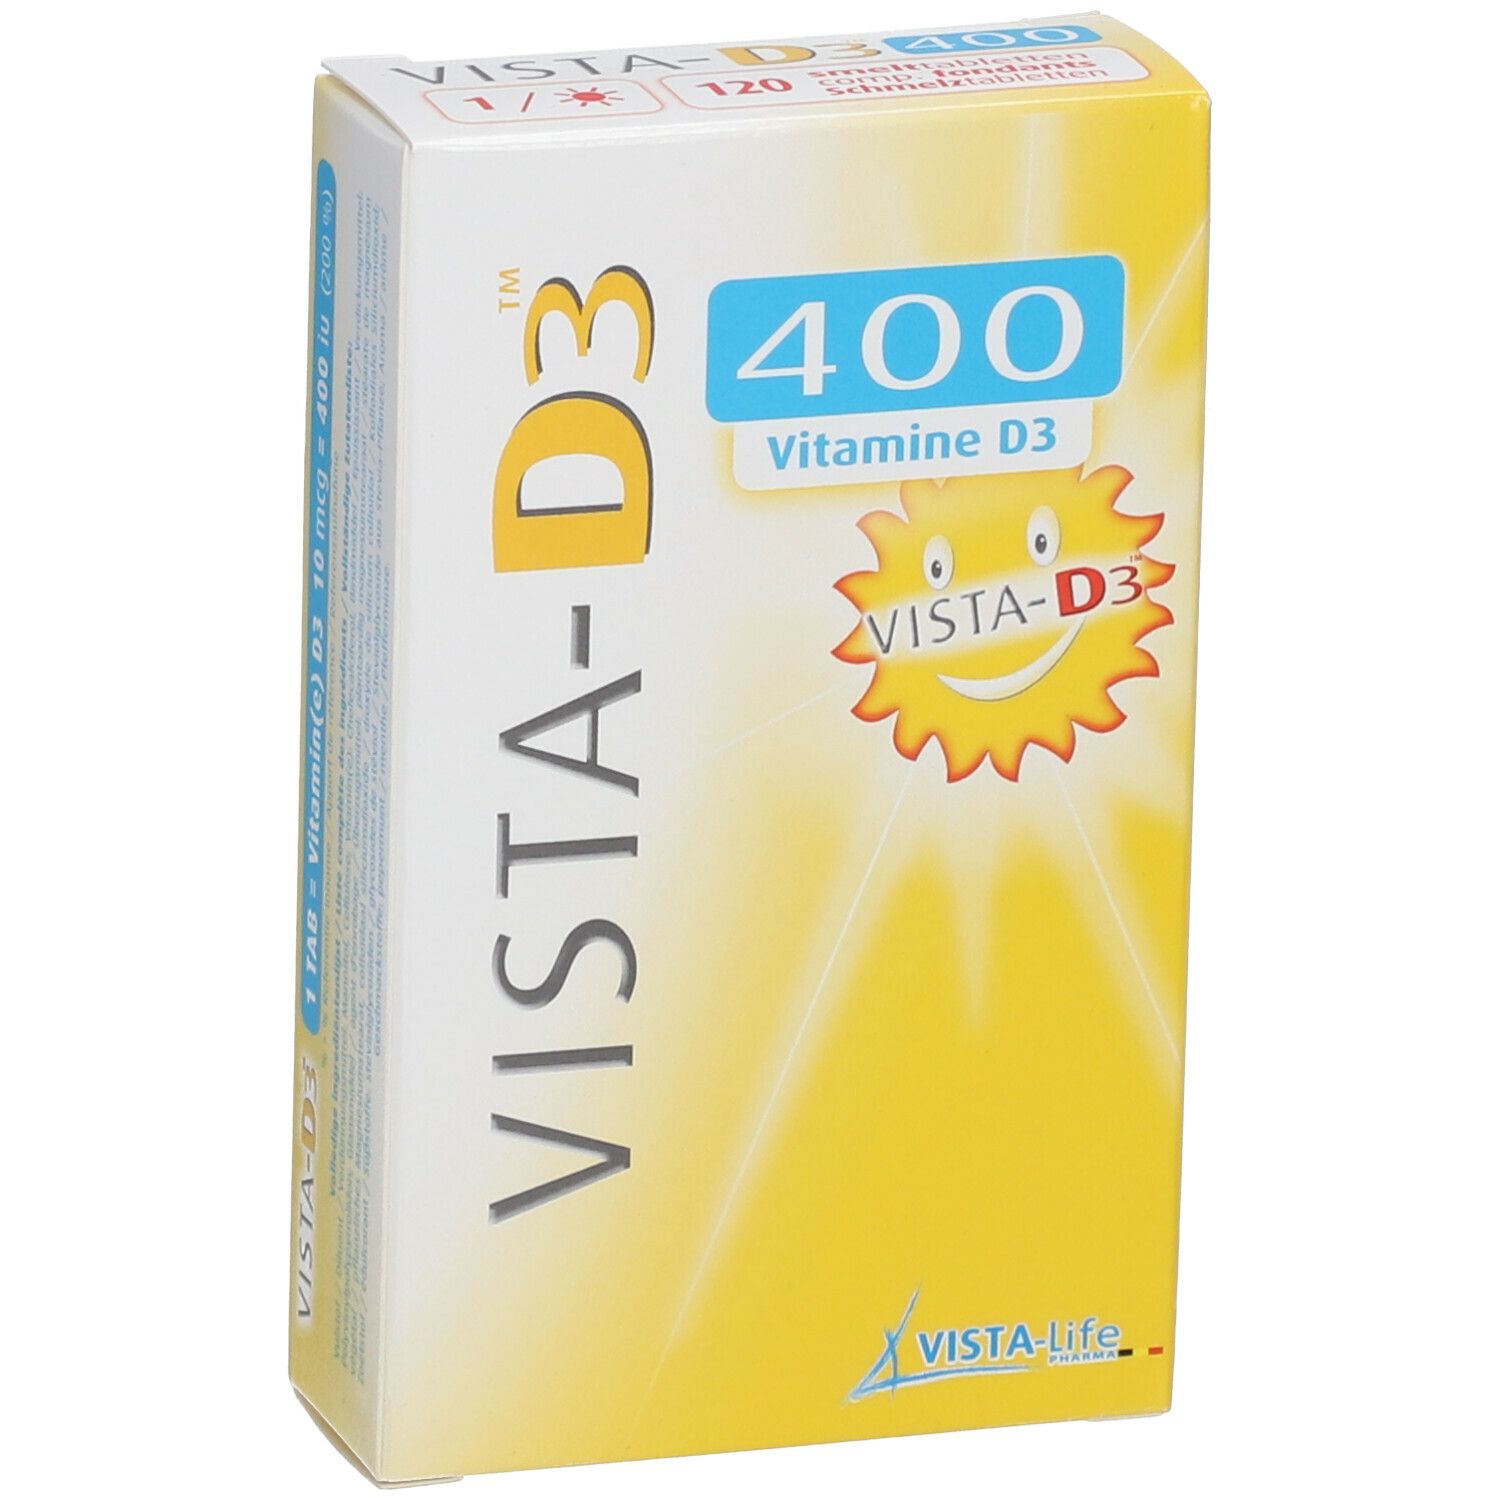 VISTA-D3 400 Junior